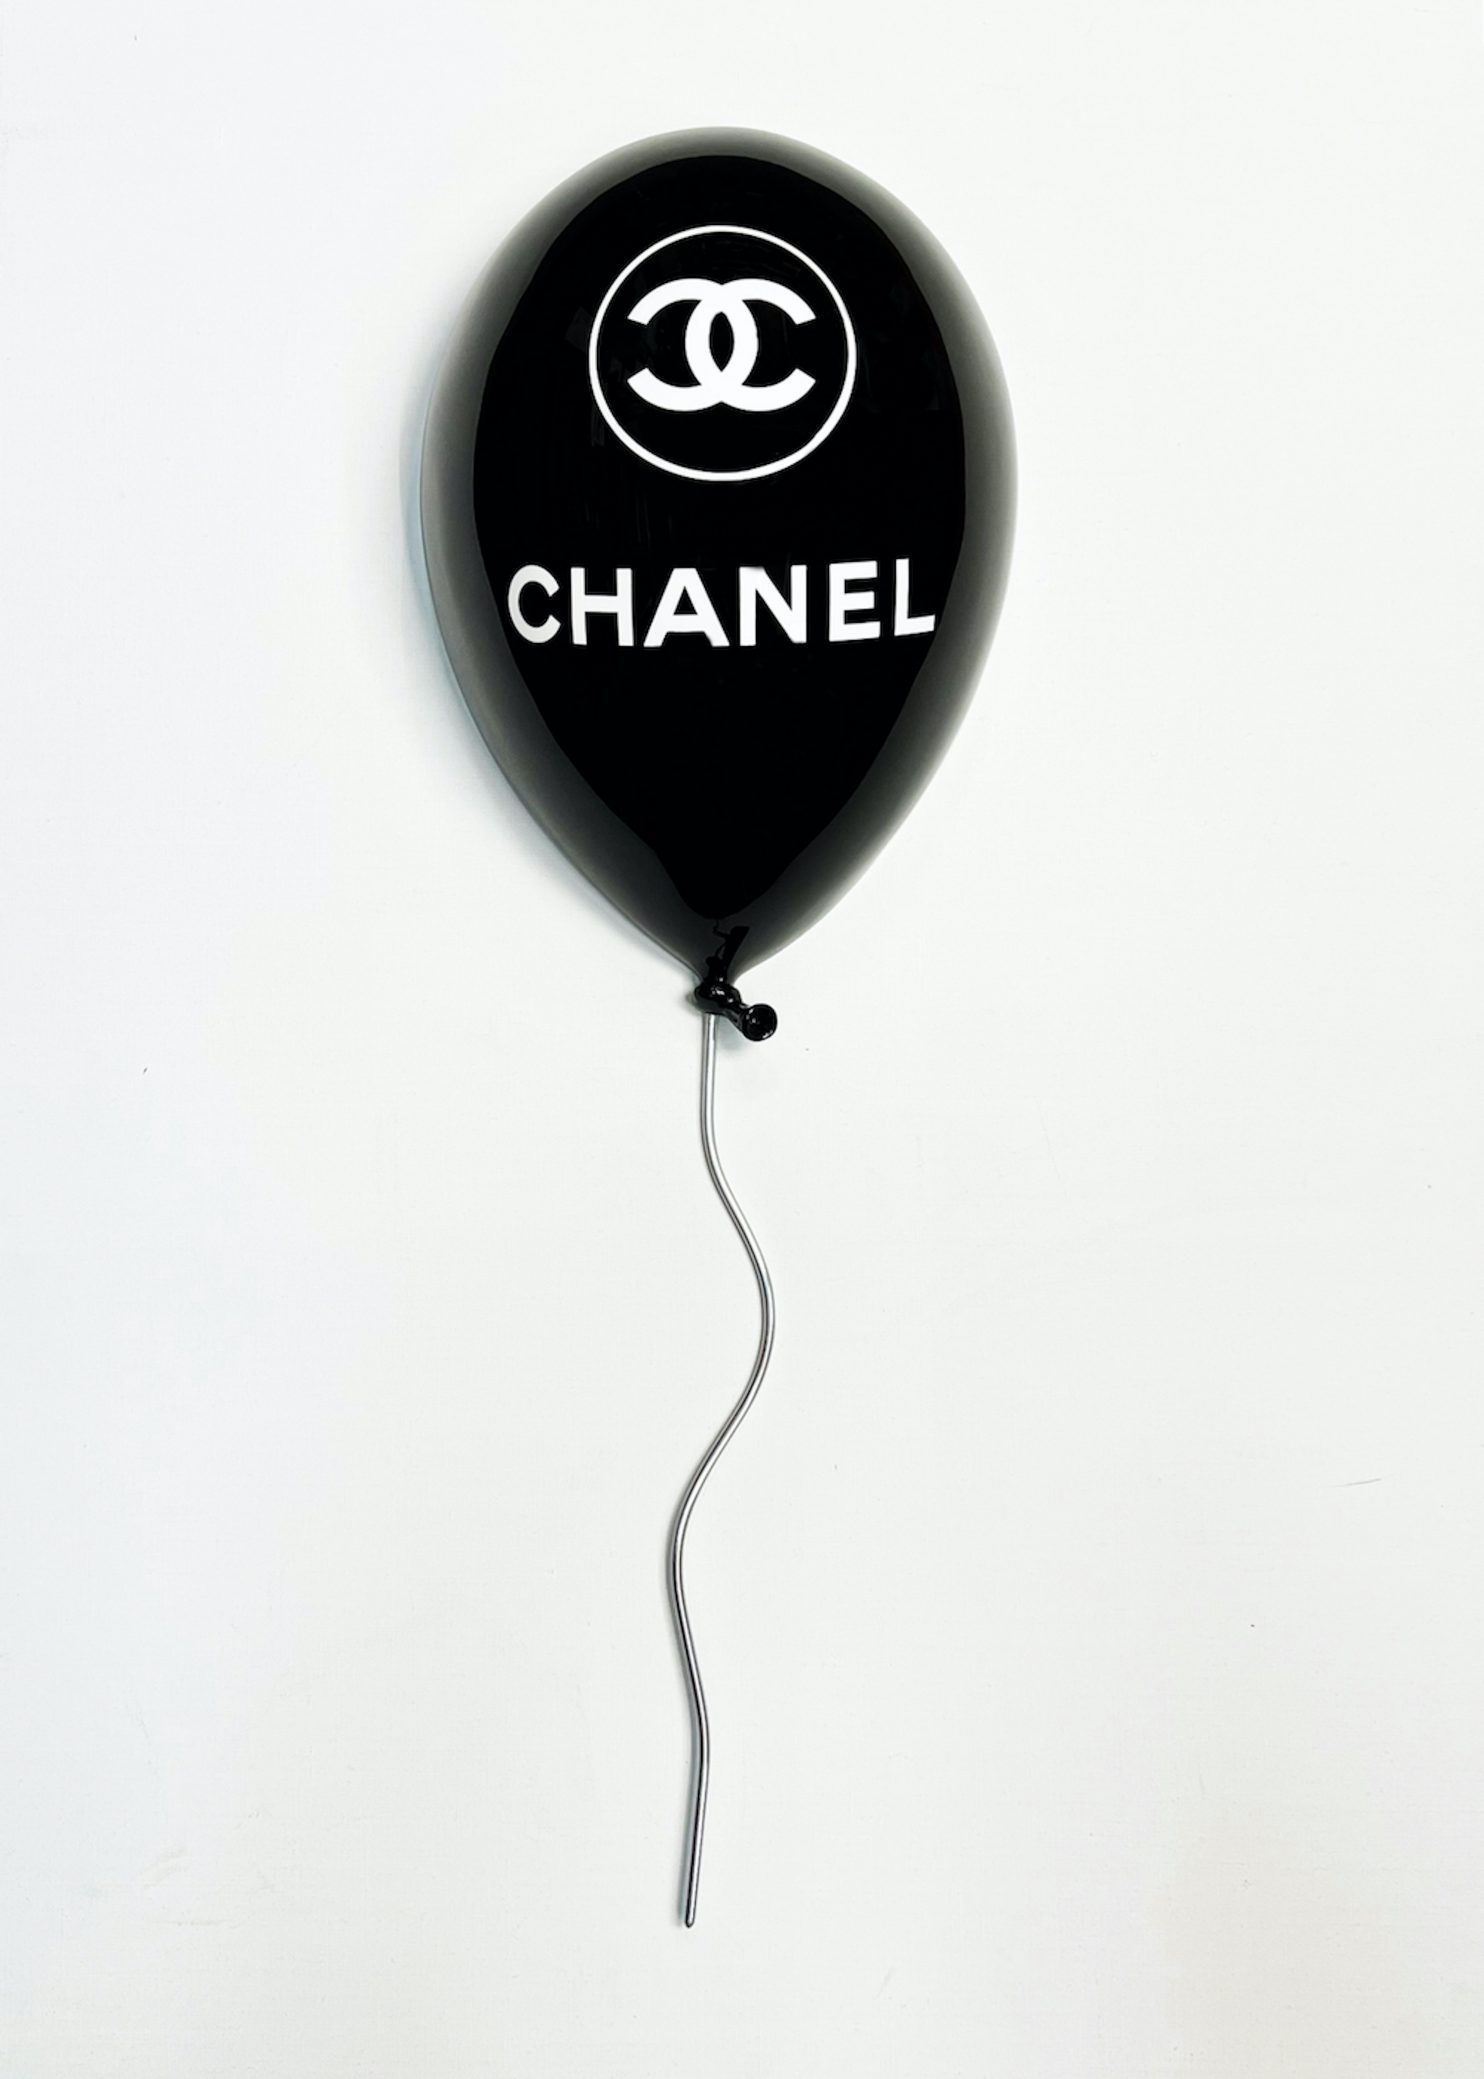 Morin Gerladine, Chanel black wall Balloon, 2022, resina, acciaio inox e acciaio, 95 x 45 x 31 cm